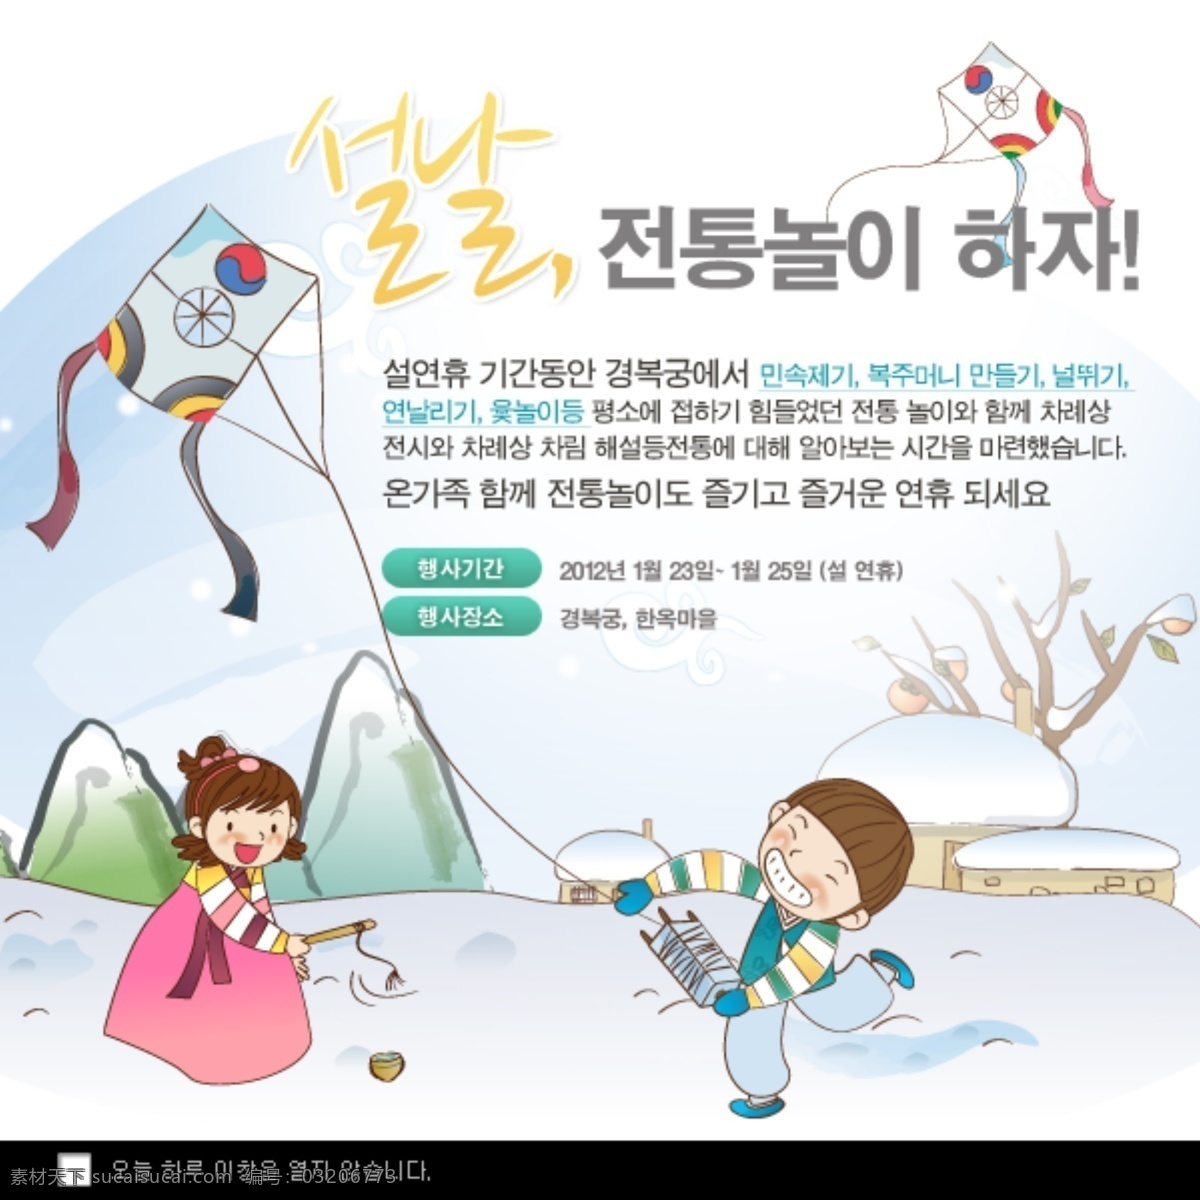 韩国 广告 宣传页 网页素材 网站 模板 个人网站模板 企业网站 模板下载 网页模板 模板网站界面